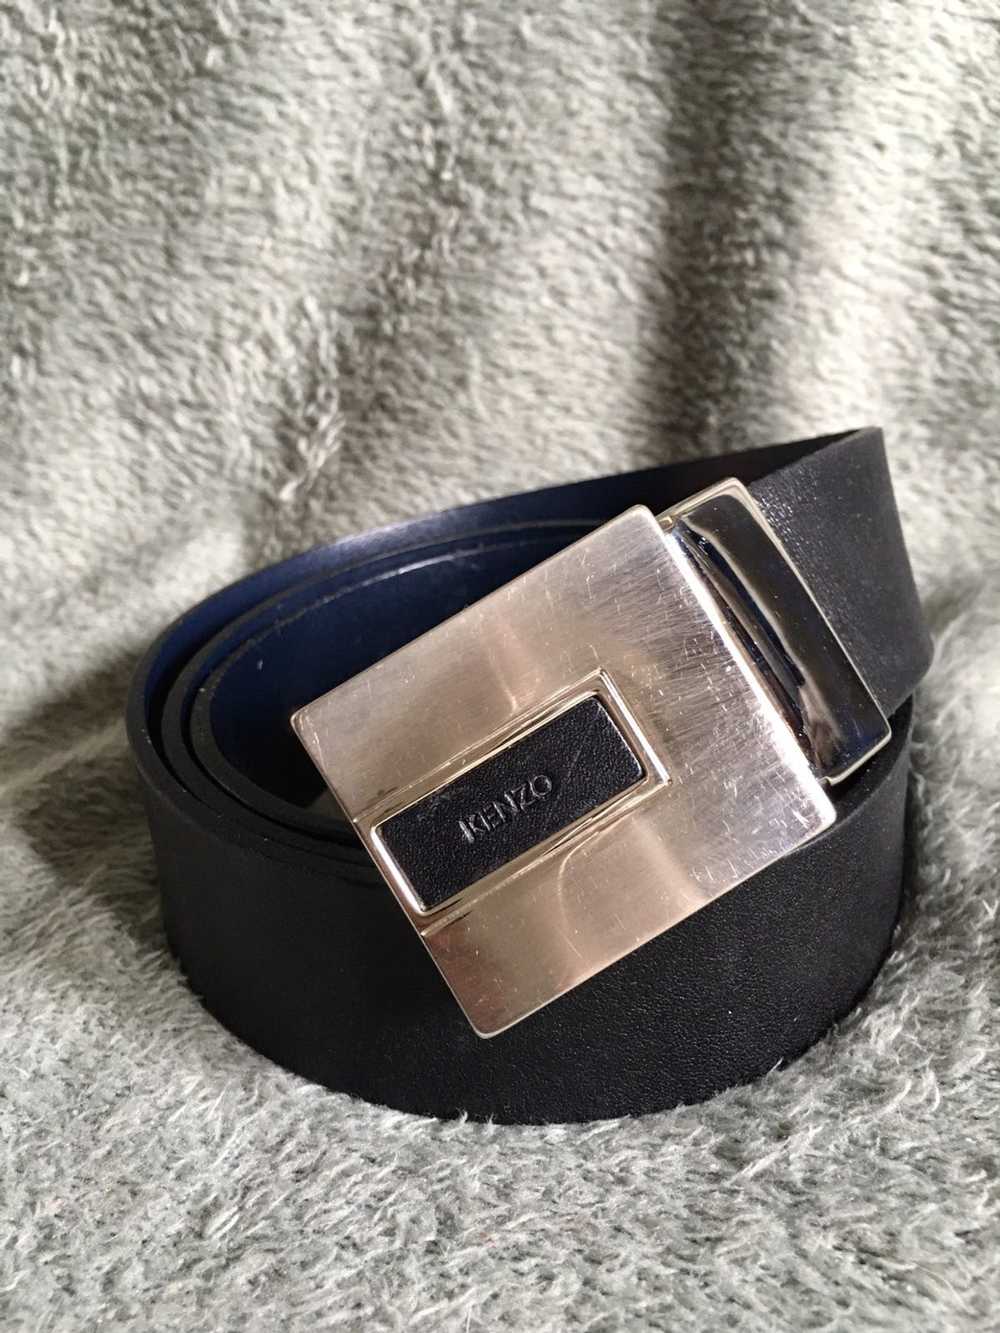 Kenzo × Luxury KENZO Paris Black France Leather B… - image 1